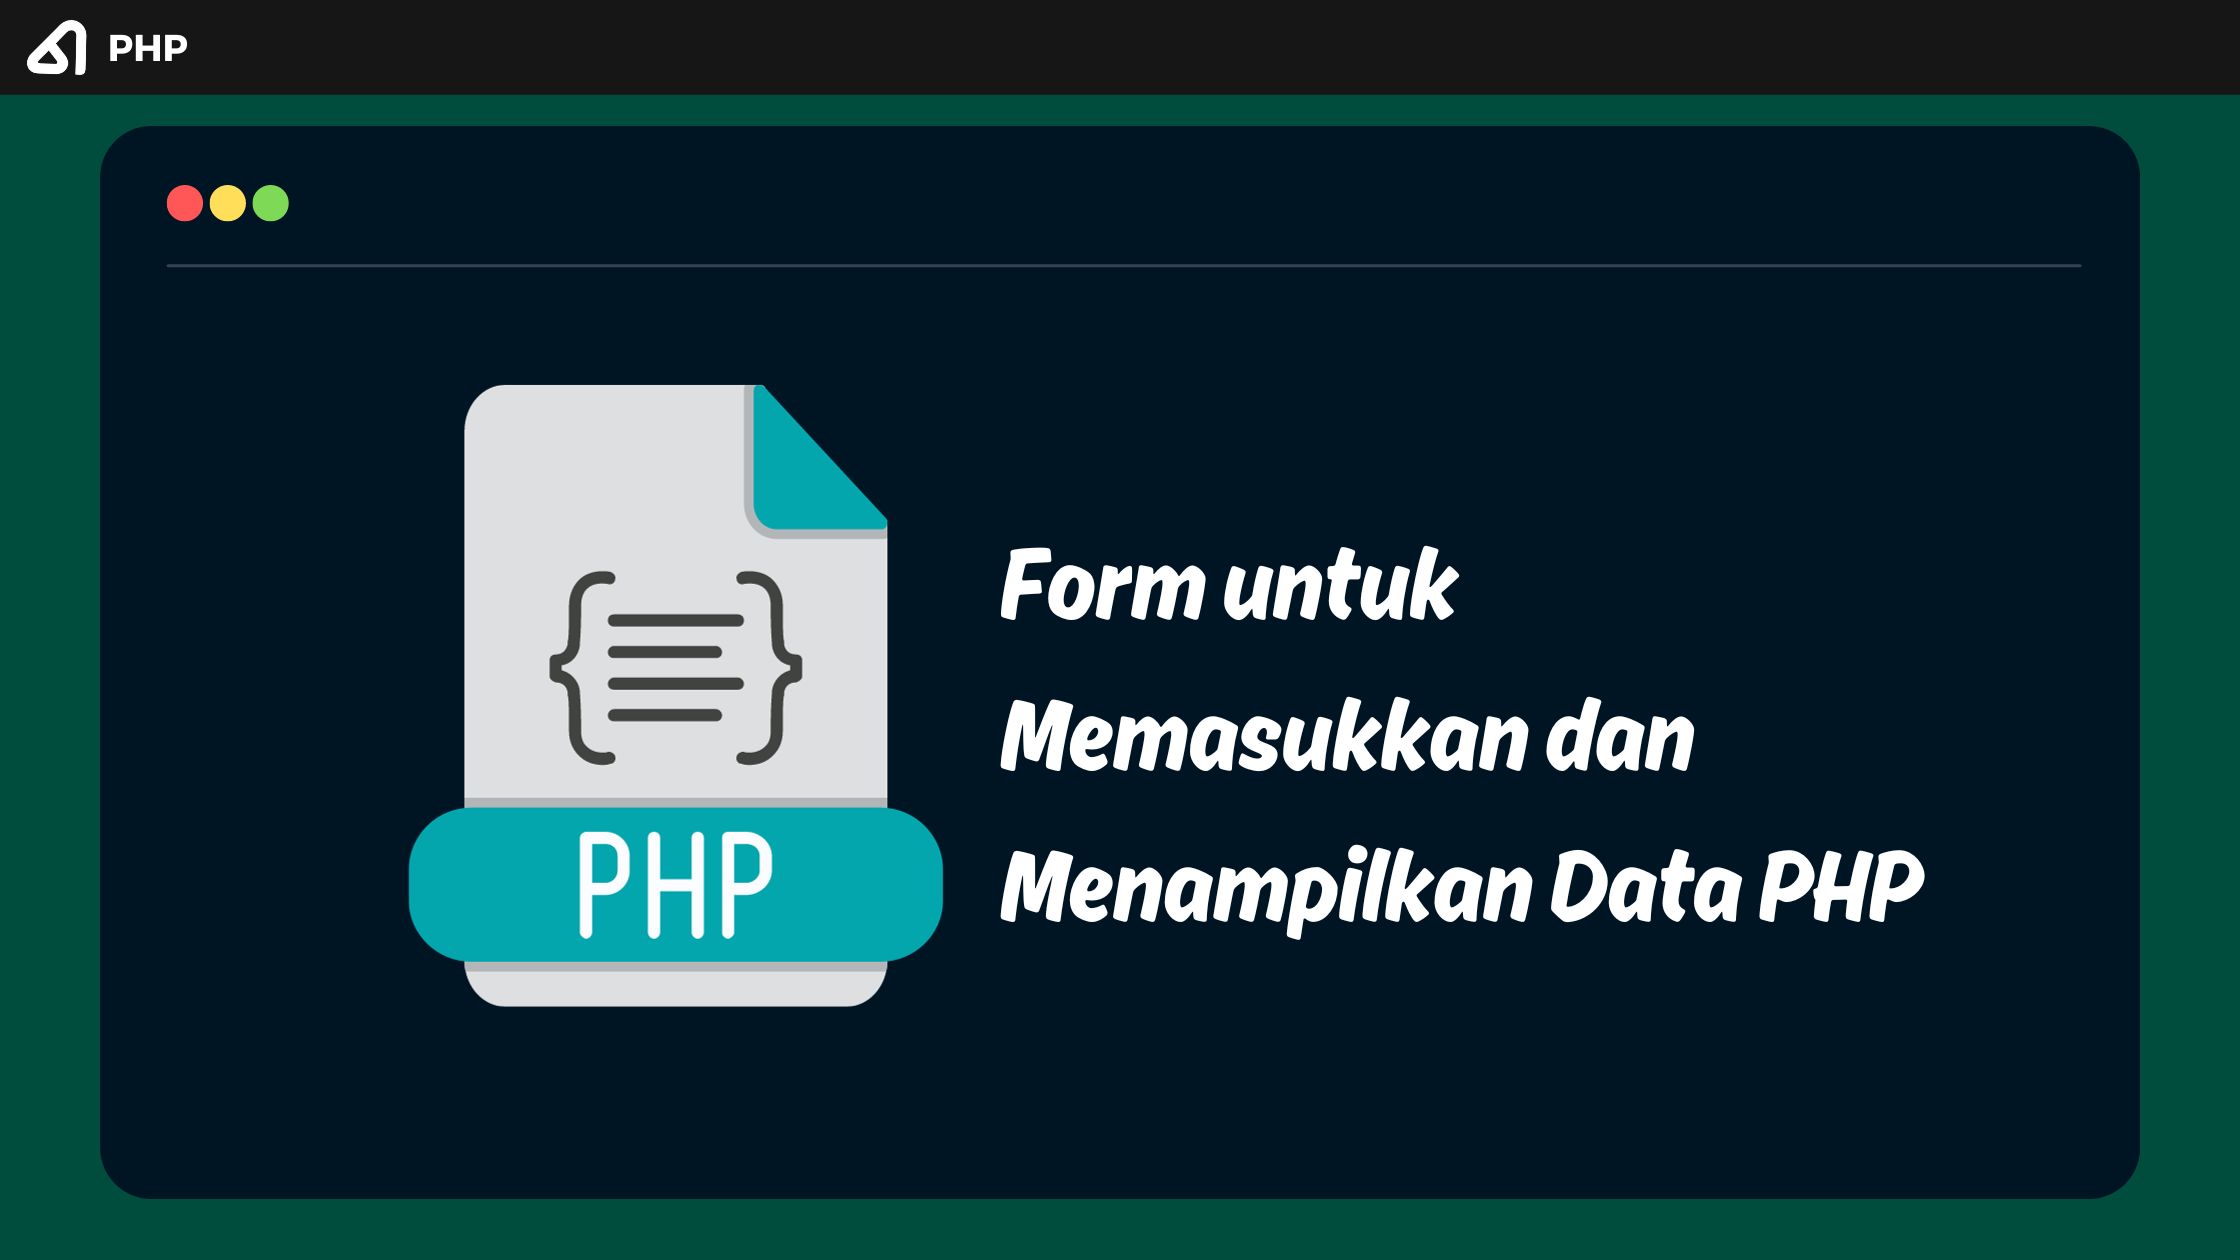 Form untuk Memasukkan dan Menampilkan Data pada PHP